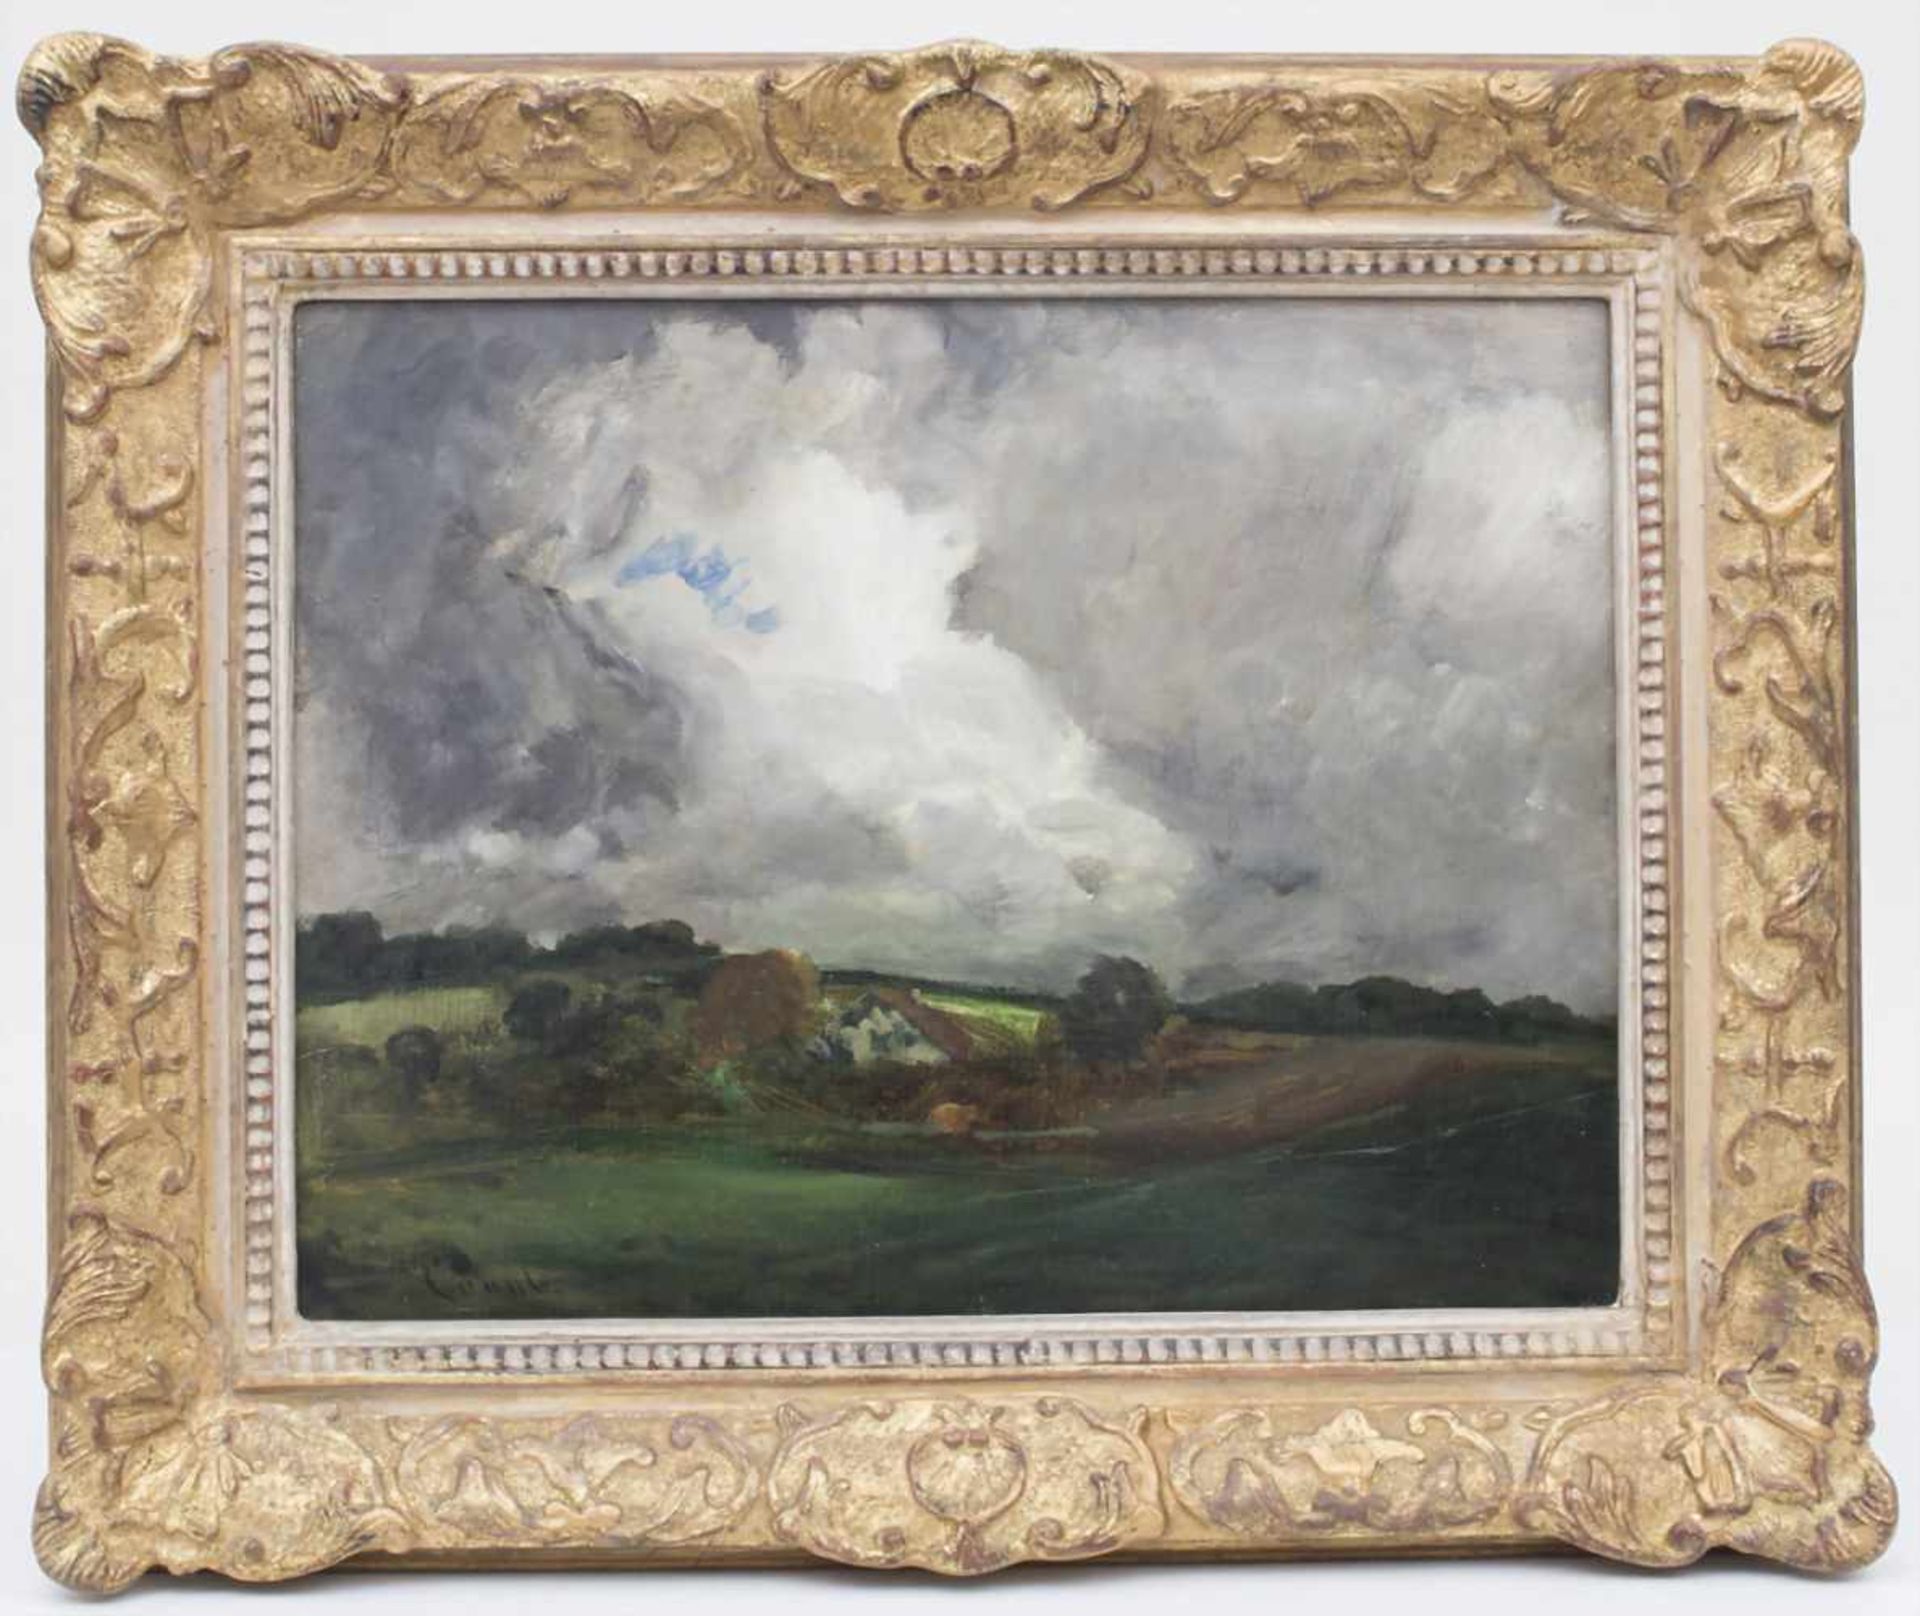 Gilbert von Canal (1849-1927), 'Landschaft mit Gewitterwolken' / 'A landscape with thunderclouds' - Image 2 of 5